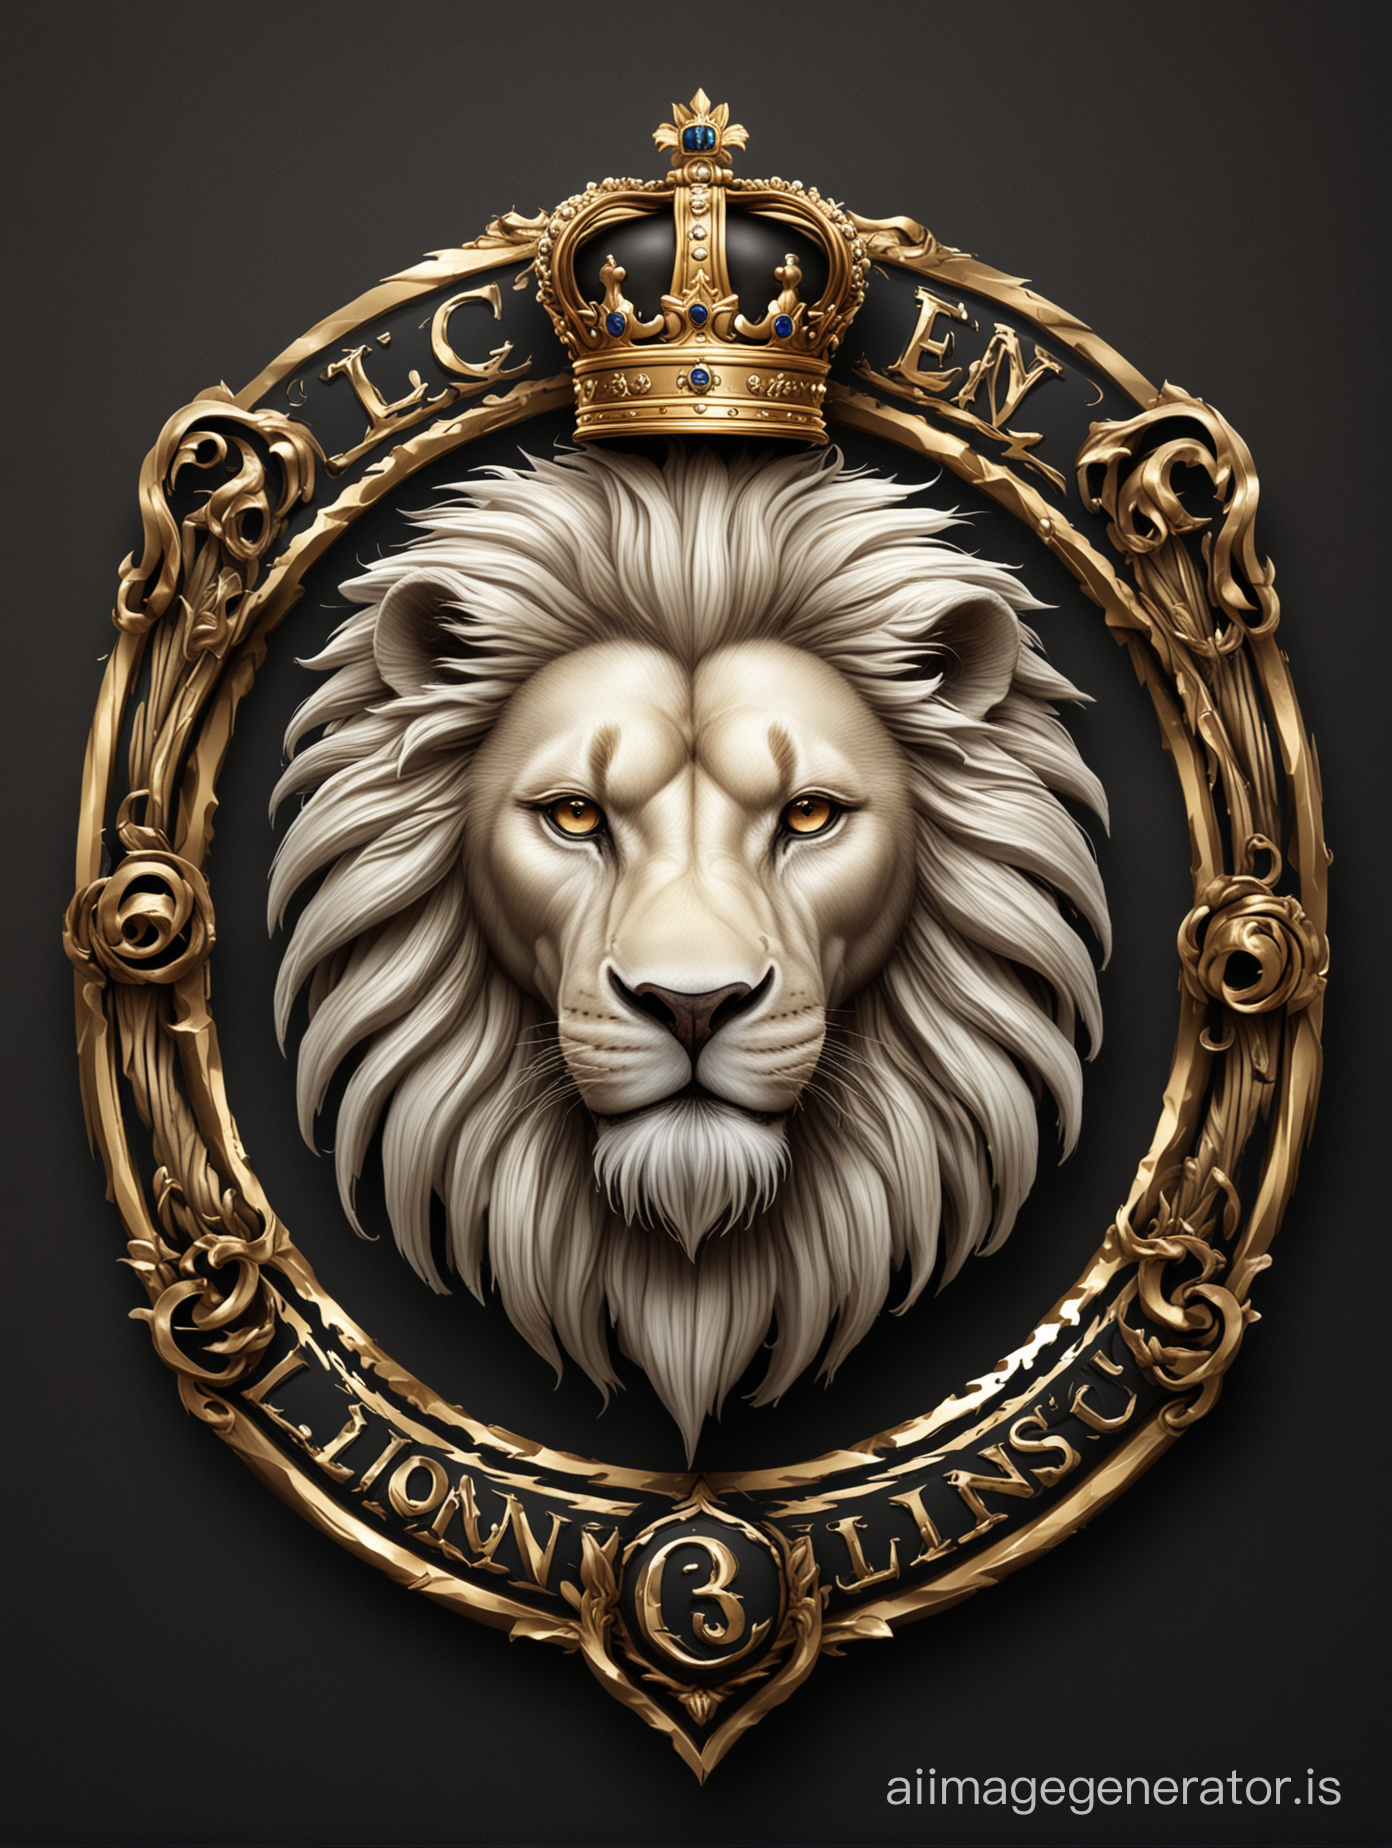 дизайн логотипа для канала 3 льва, белый лев, золотой лев, черный лев. Фэнтези реалистик. Векторная графика, HD written tag line royal Family
